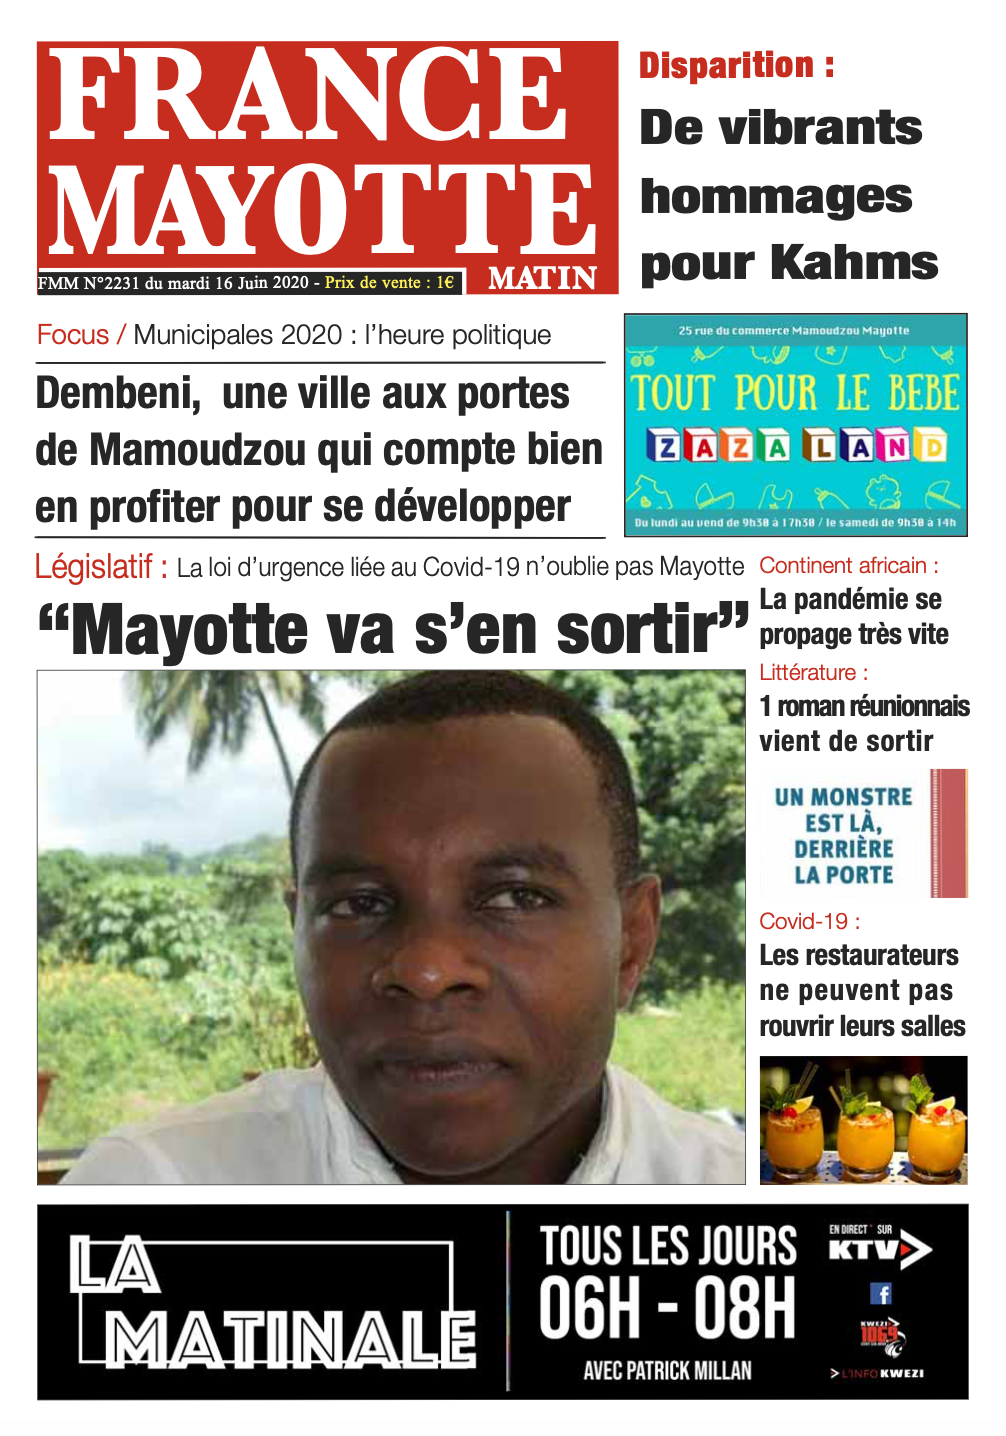 France Mayotte Mardi 16 juin 2020